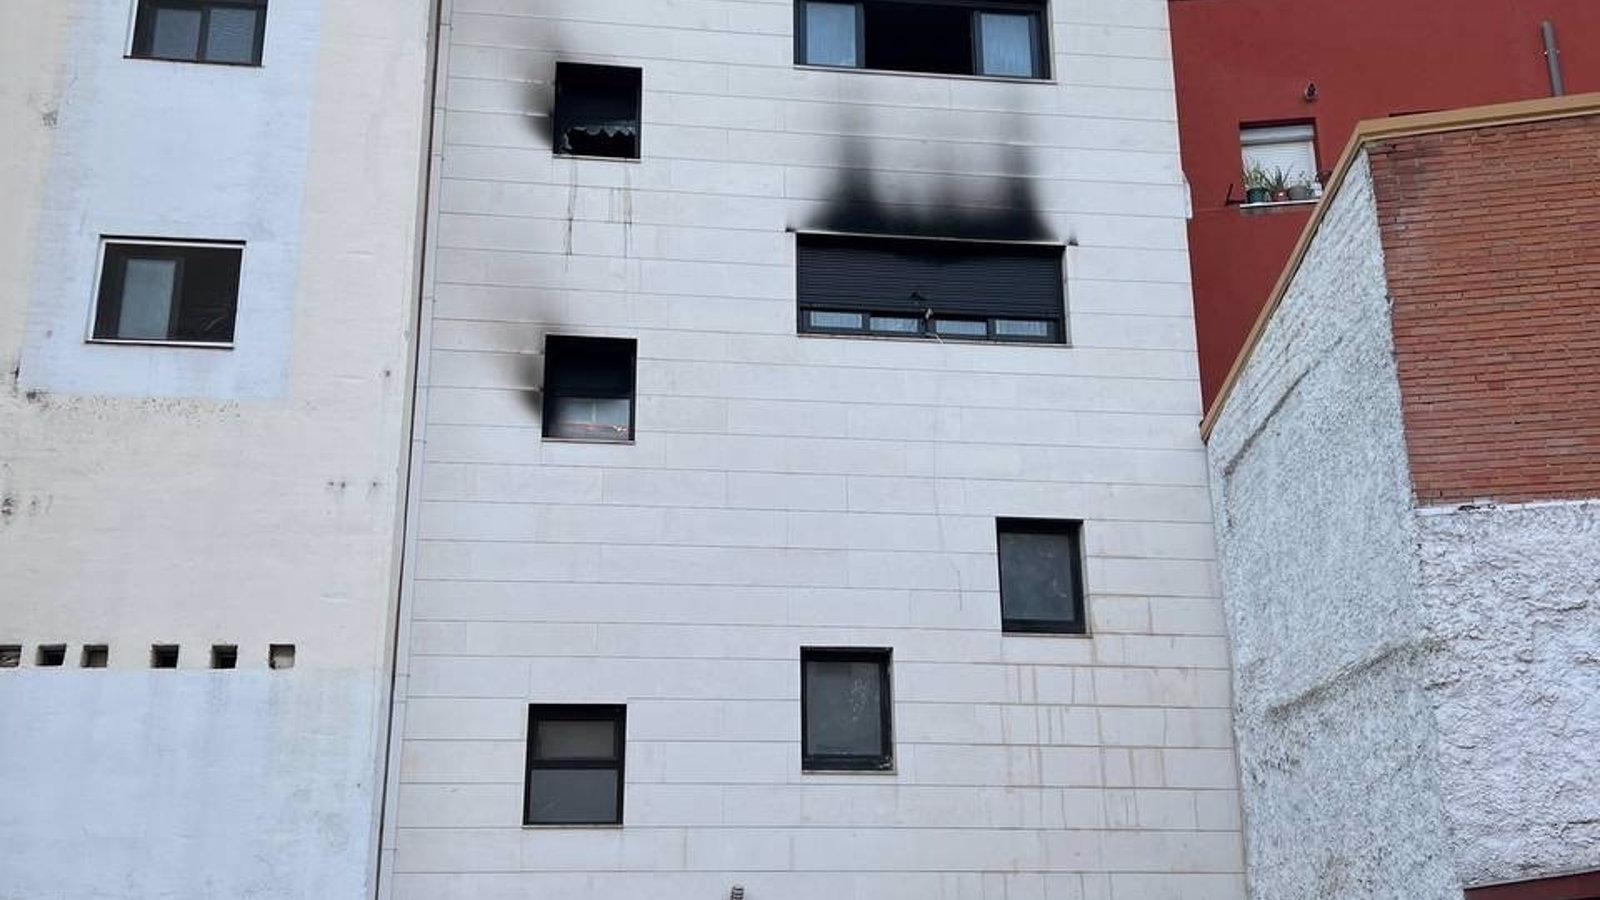 El fuego del edificio okupado de Villalba fue provocado, tras localizar la Guardia Civil 3 focos distintos